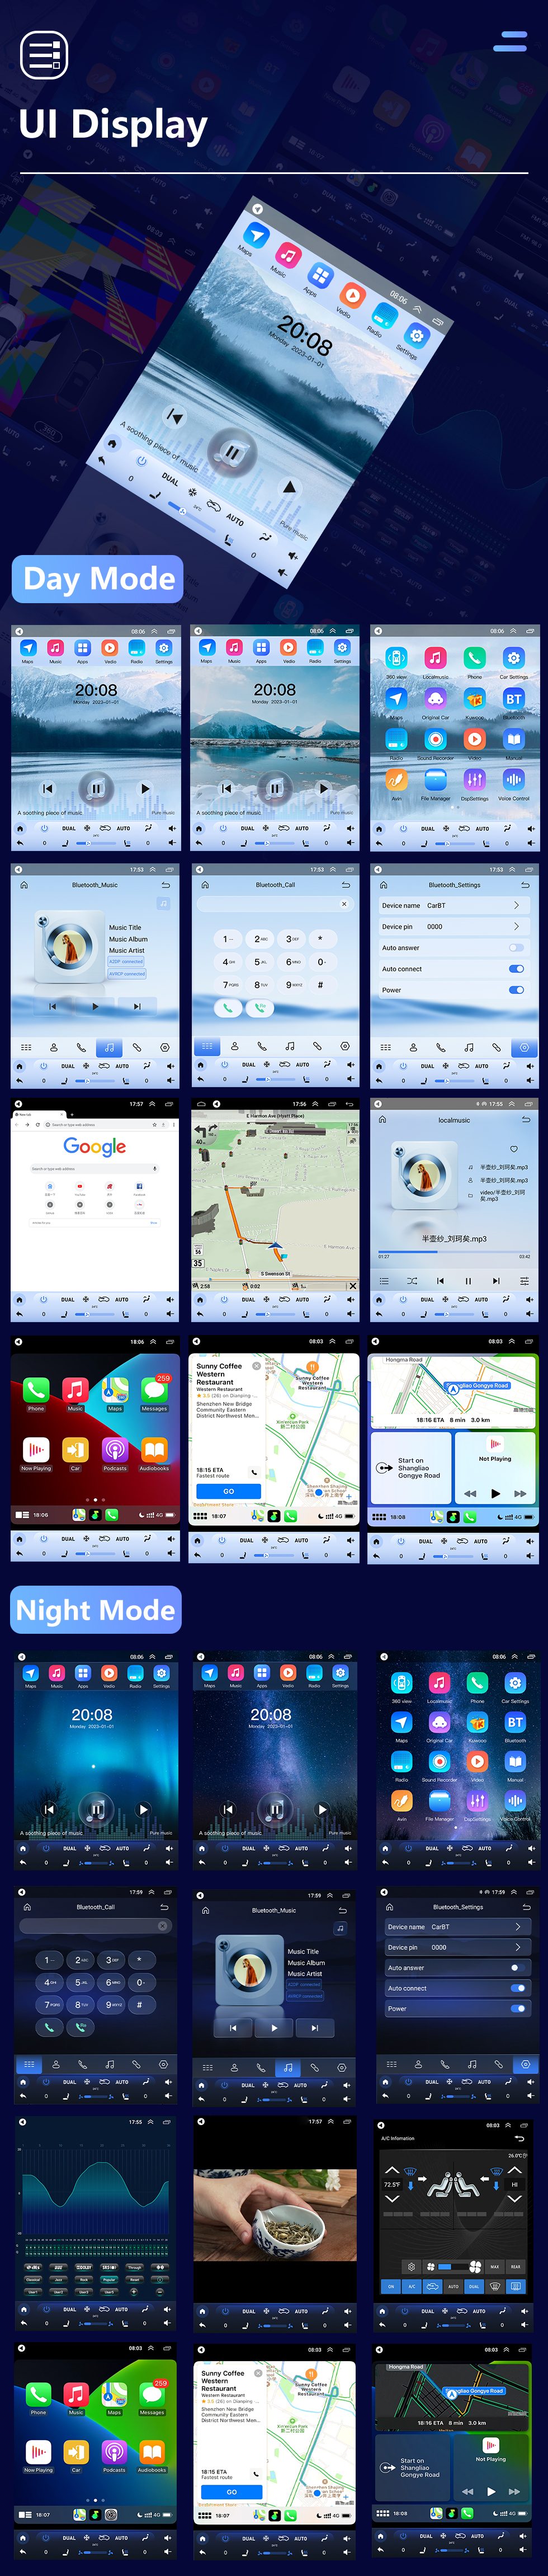 Seicane Rádio OEM Android 10.0 de 9,7 polegadas para 2012-2022 Peugeot 405 Bluetooth WIFI HD Tela sensível ao toque Suporte de navegação GPS Carplay Câmera traseira DAB + OBD2